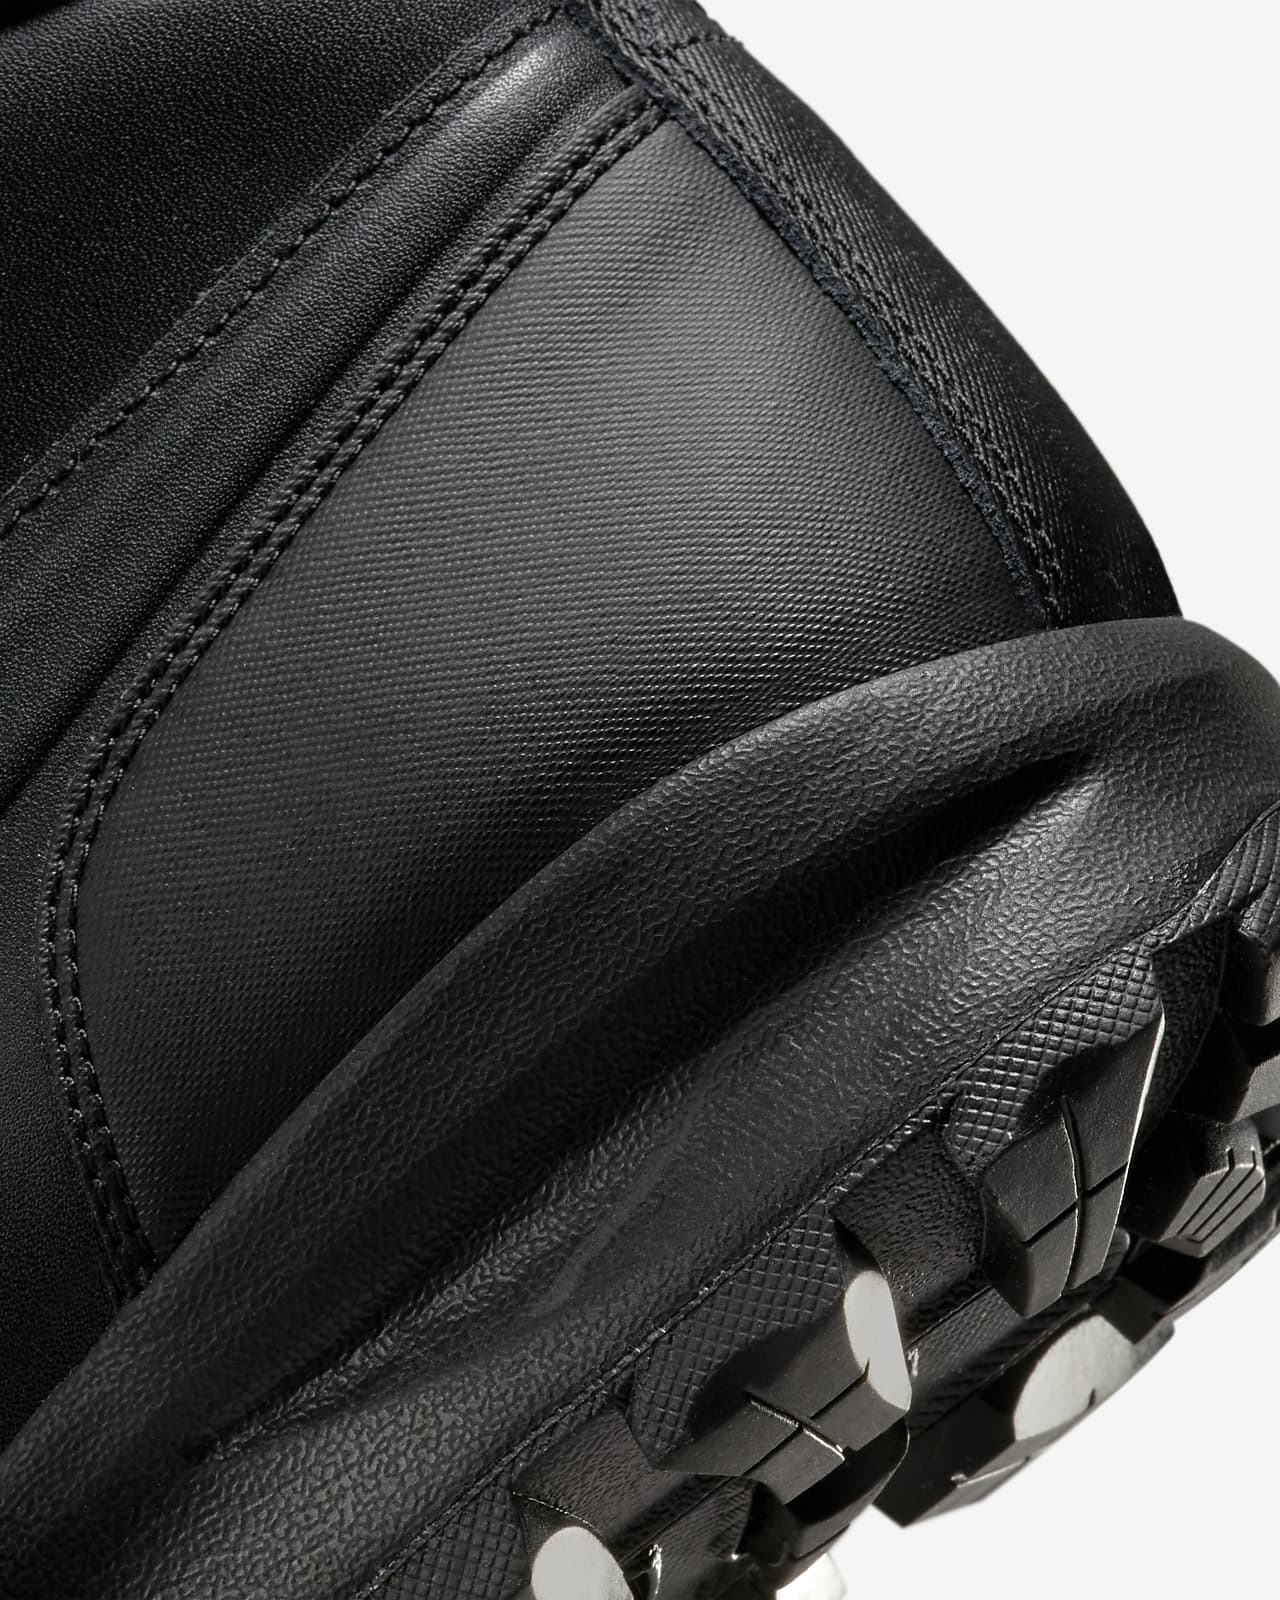 Nike Leather SE Men's Nike.com